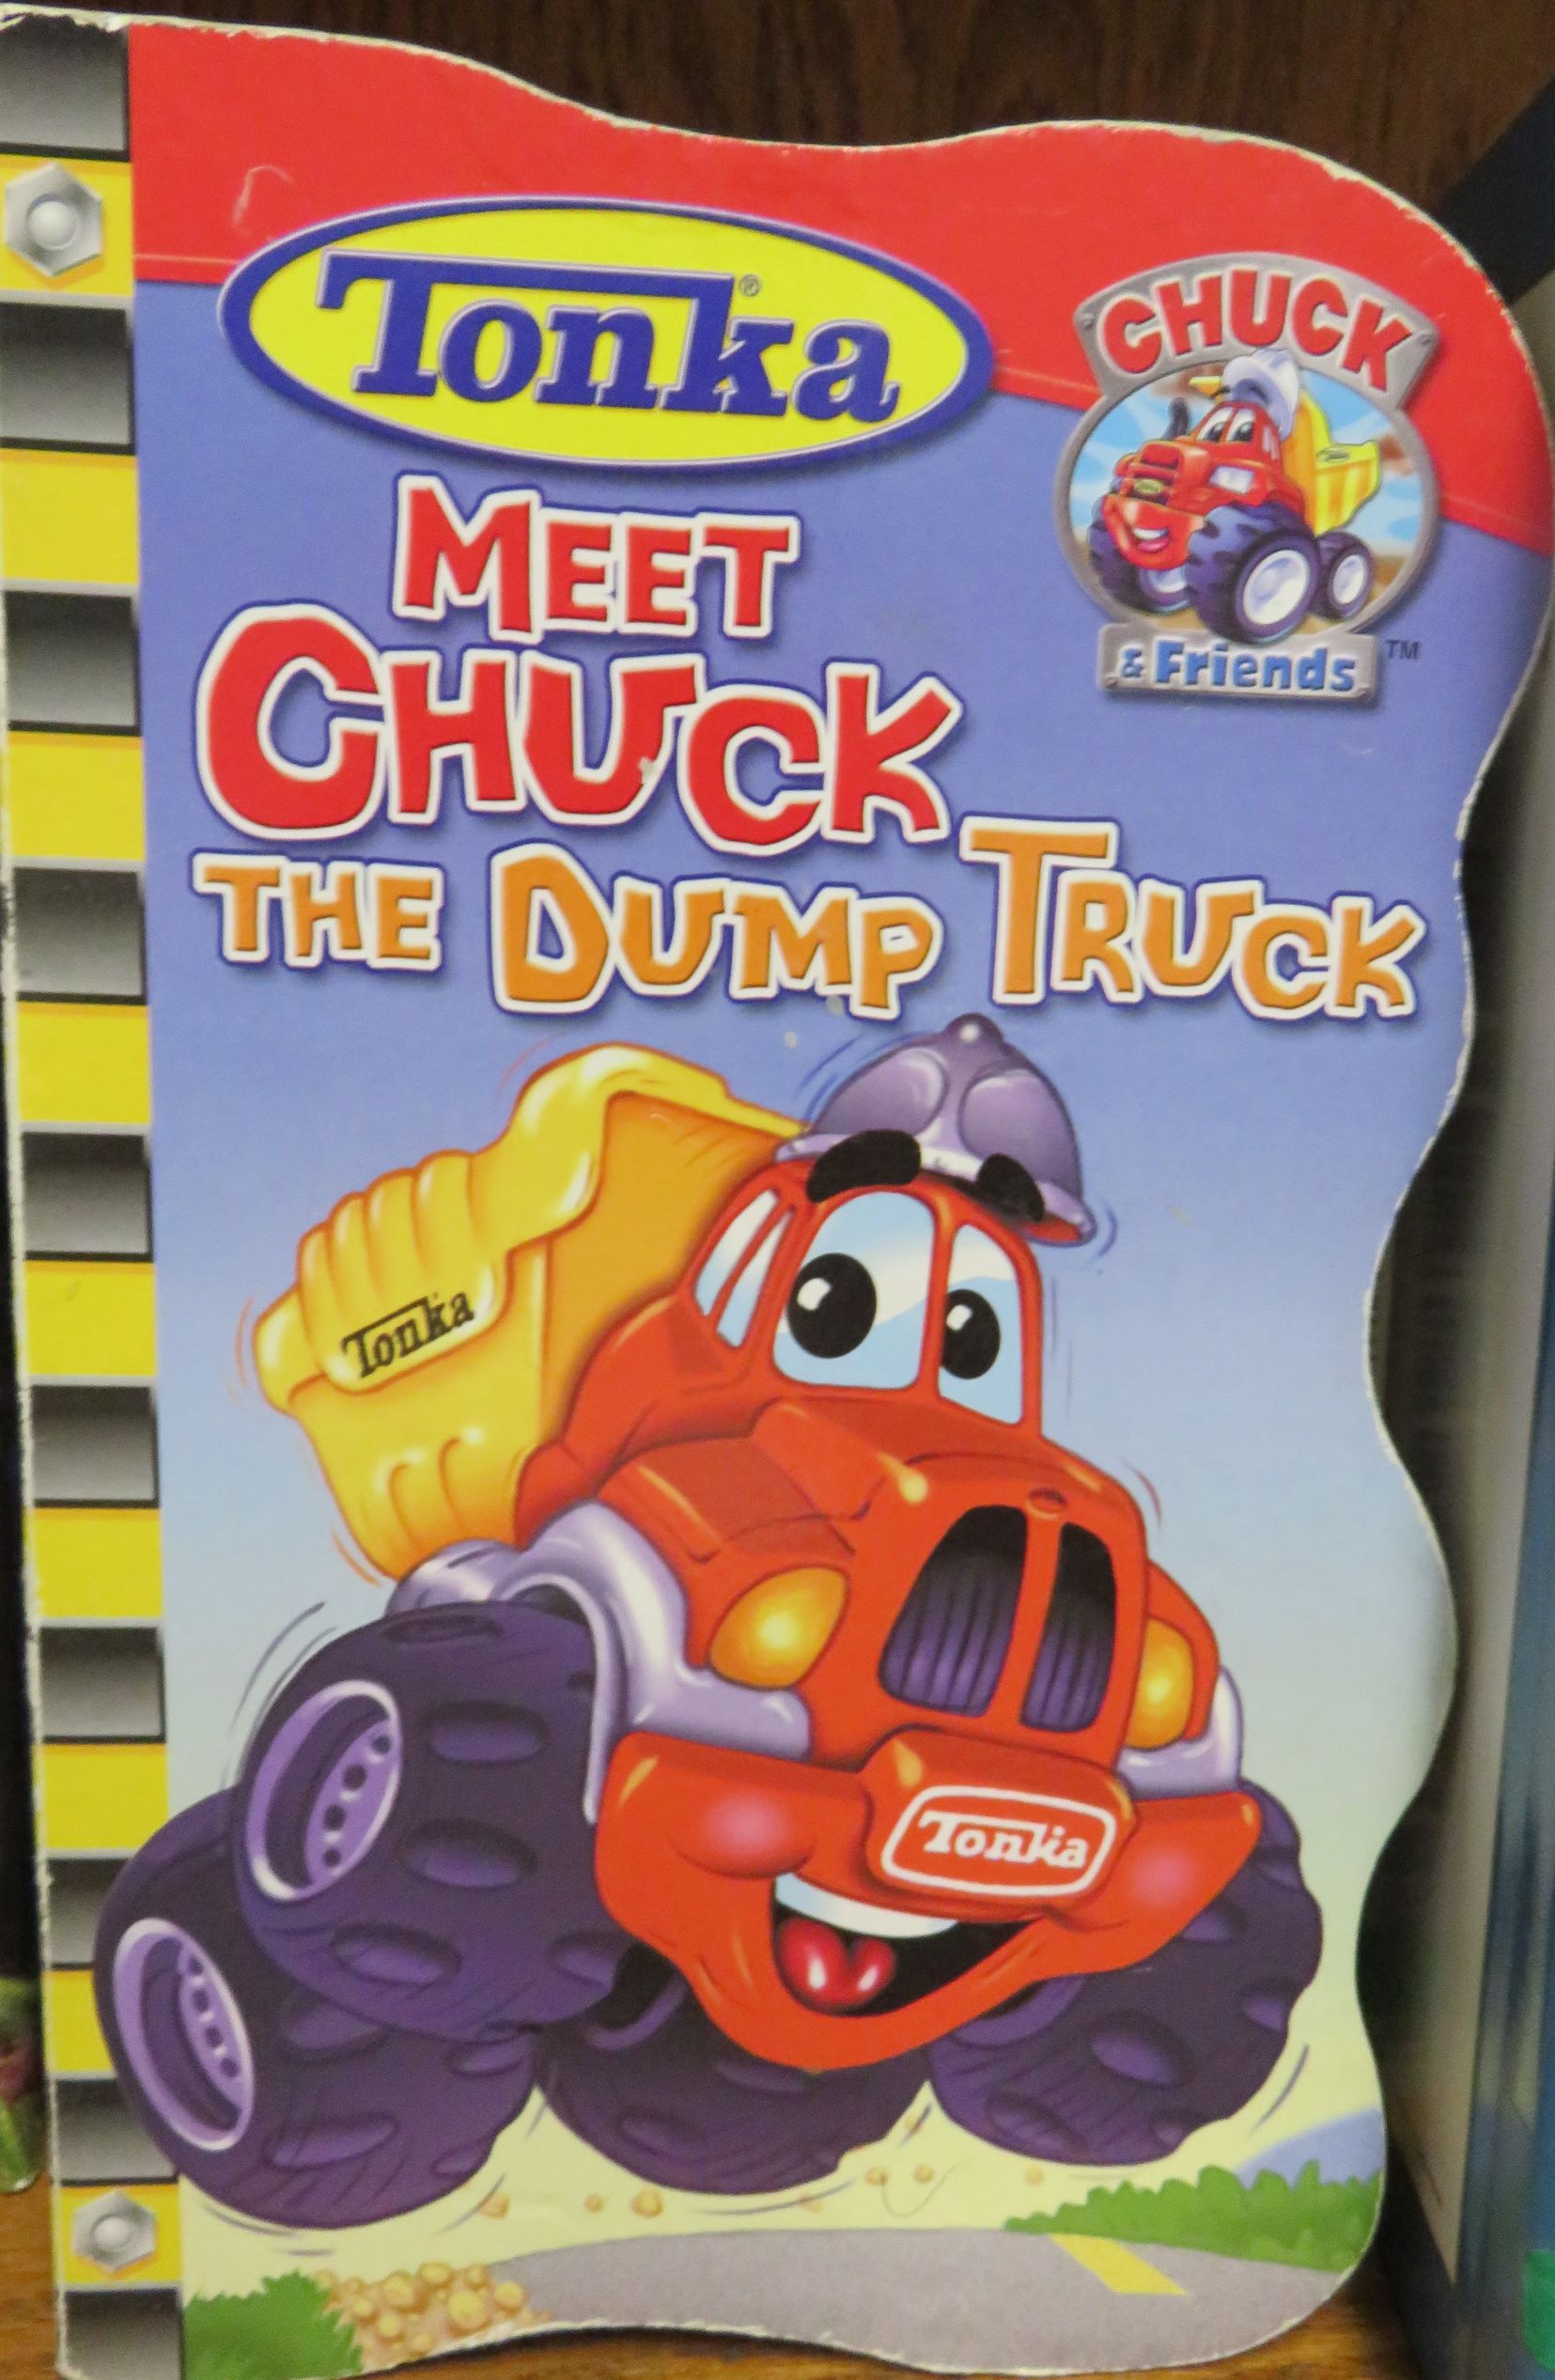 Meet Chuck the Dump Truck